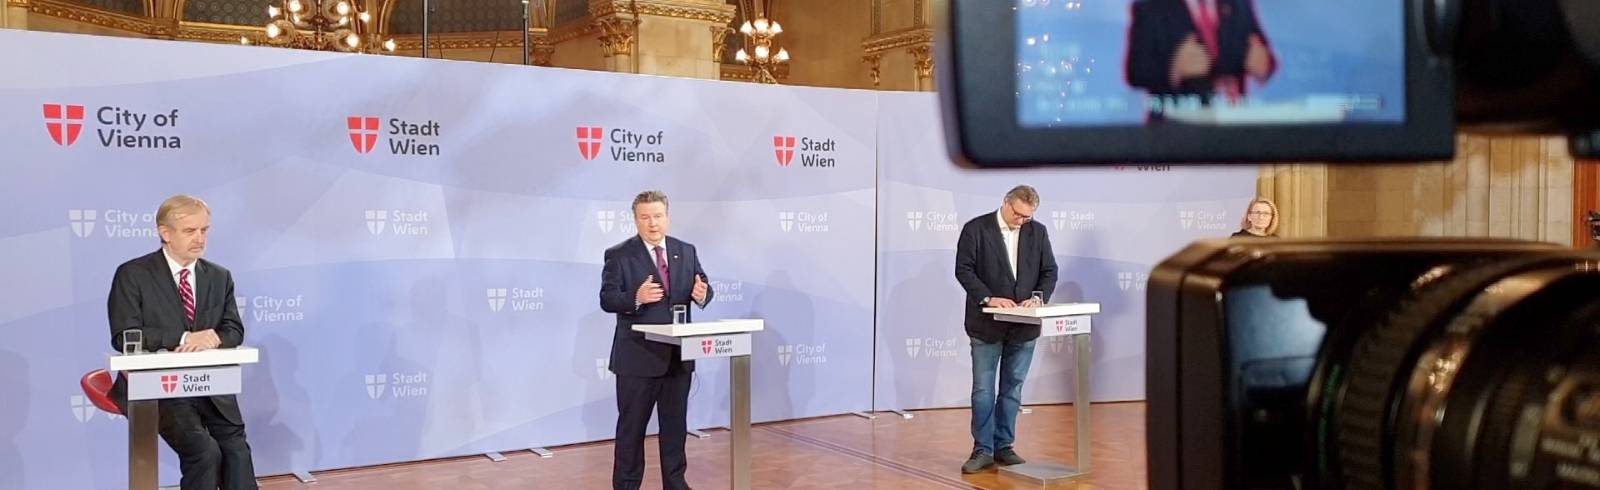 Vorläufiger Impfplan für Wien steht